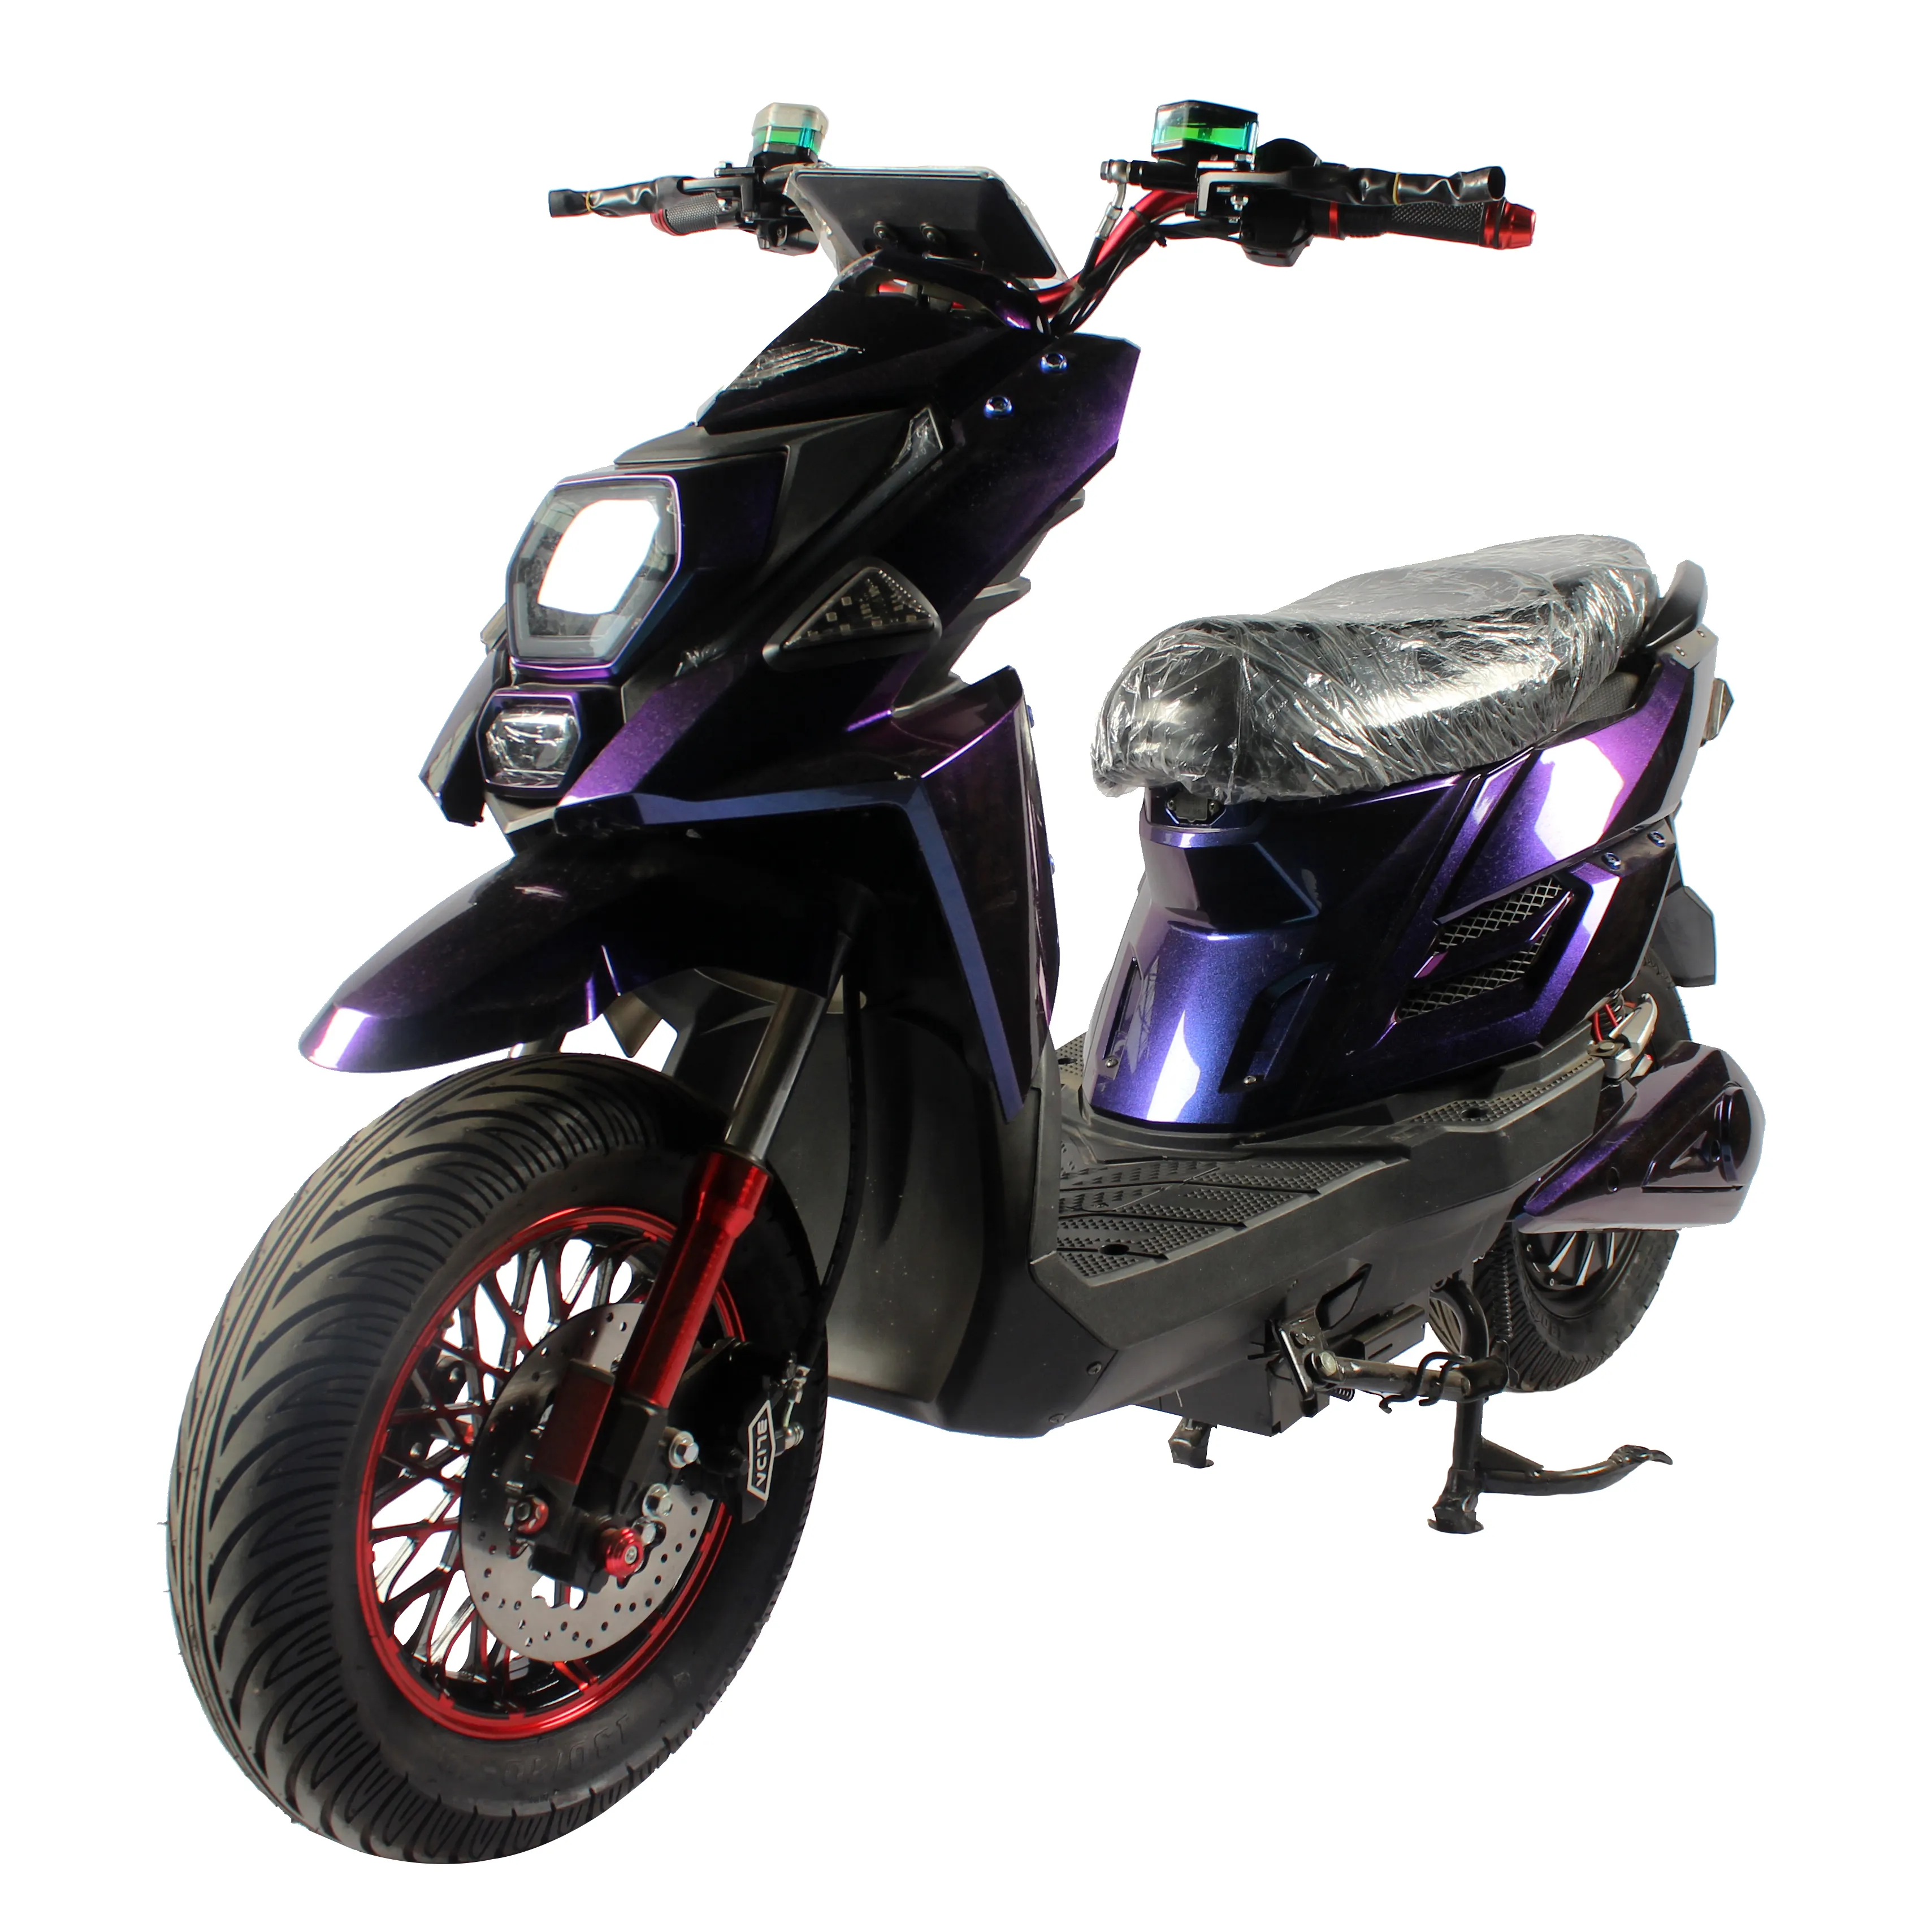 אופנוע חשמלי עירוני 2 גלגלים בעל הספק גבוה 1500W מנוע אלקטרוני עם מחיר מצוין